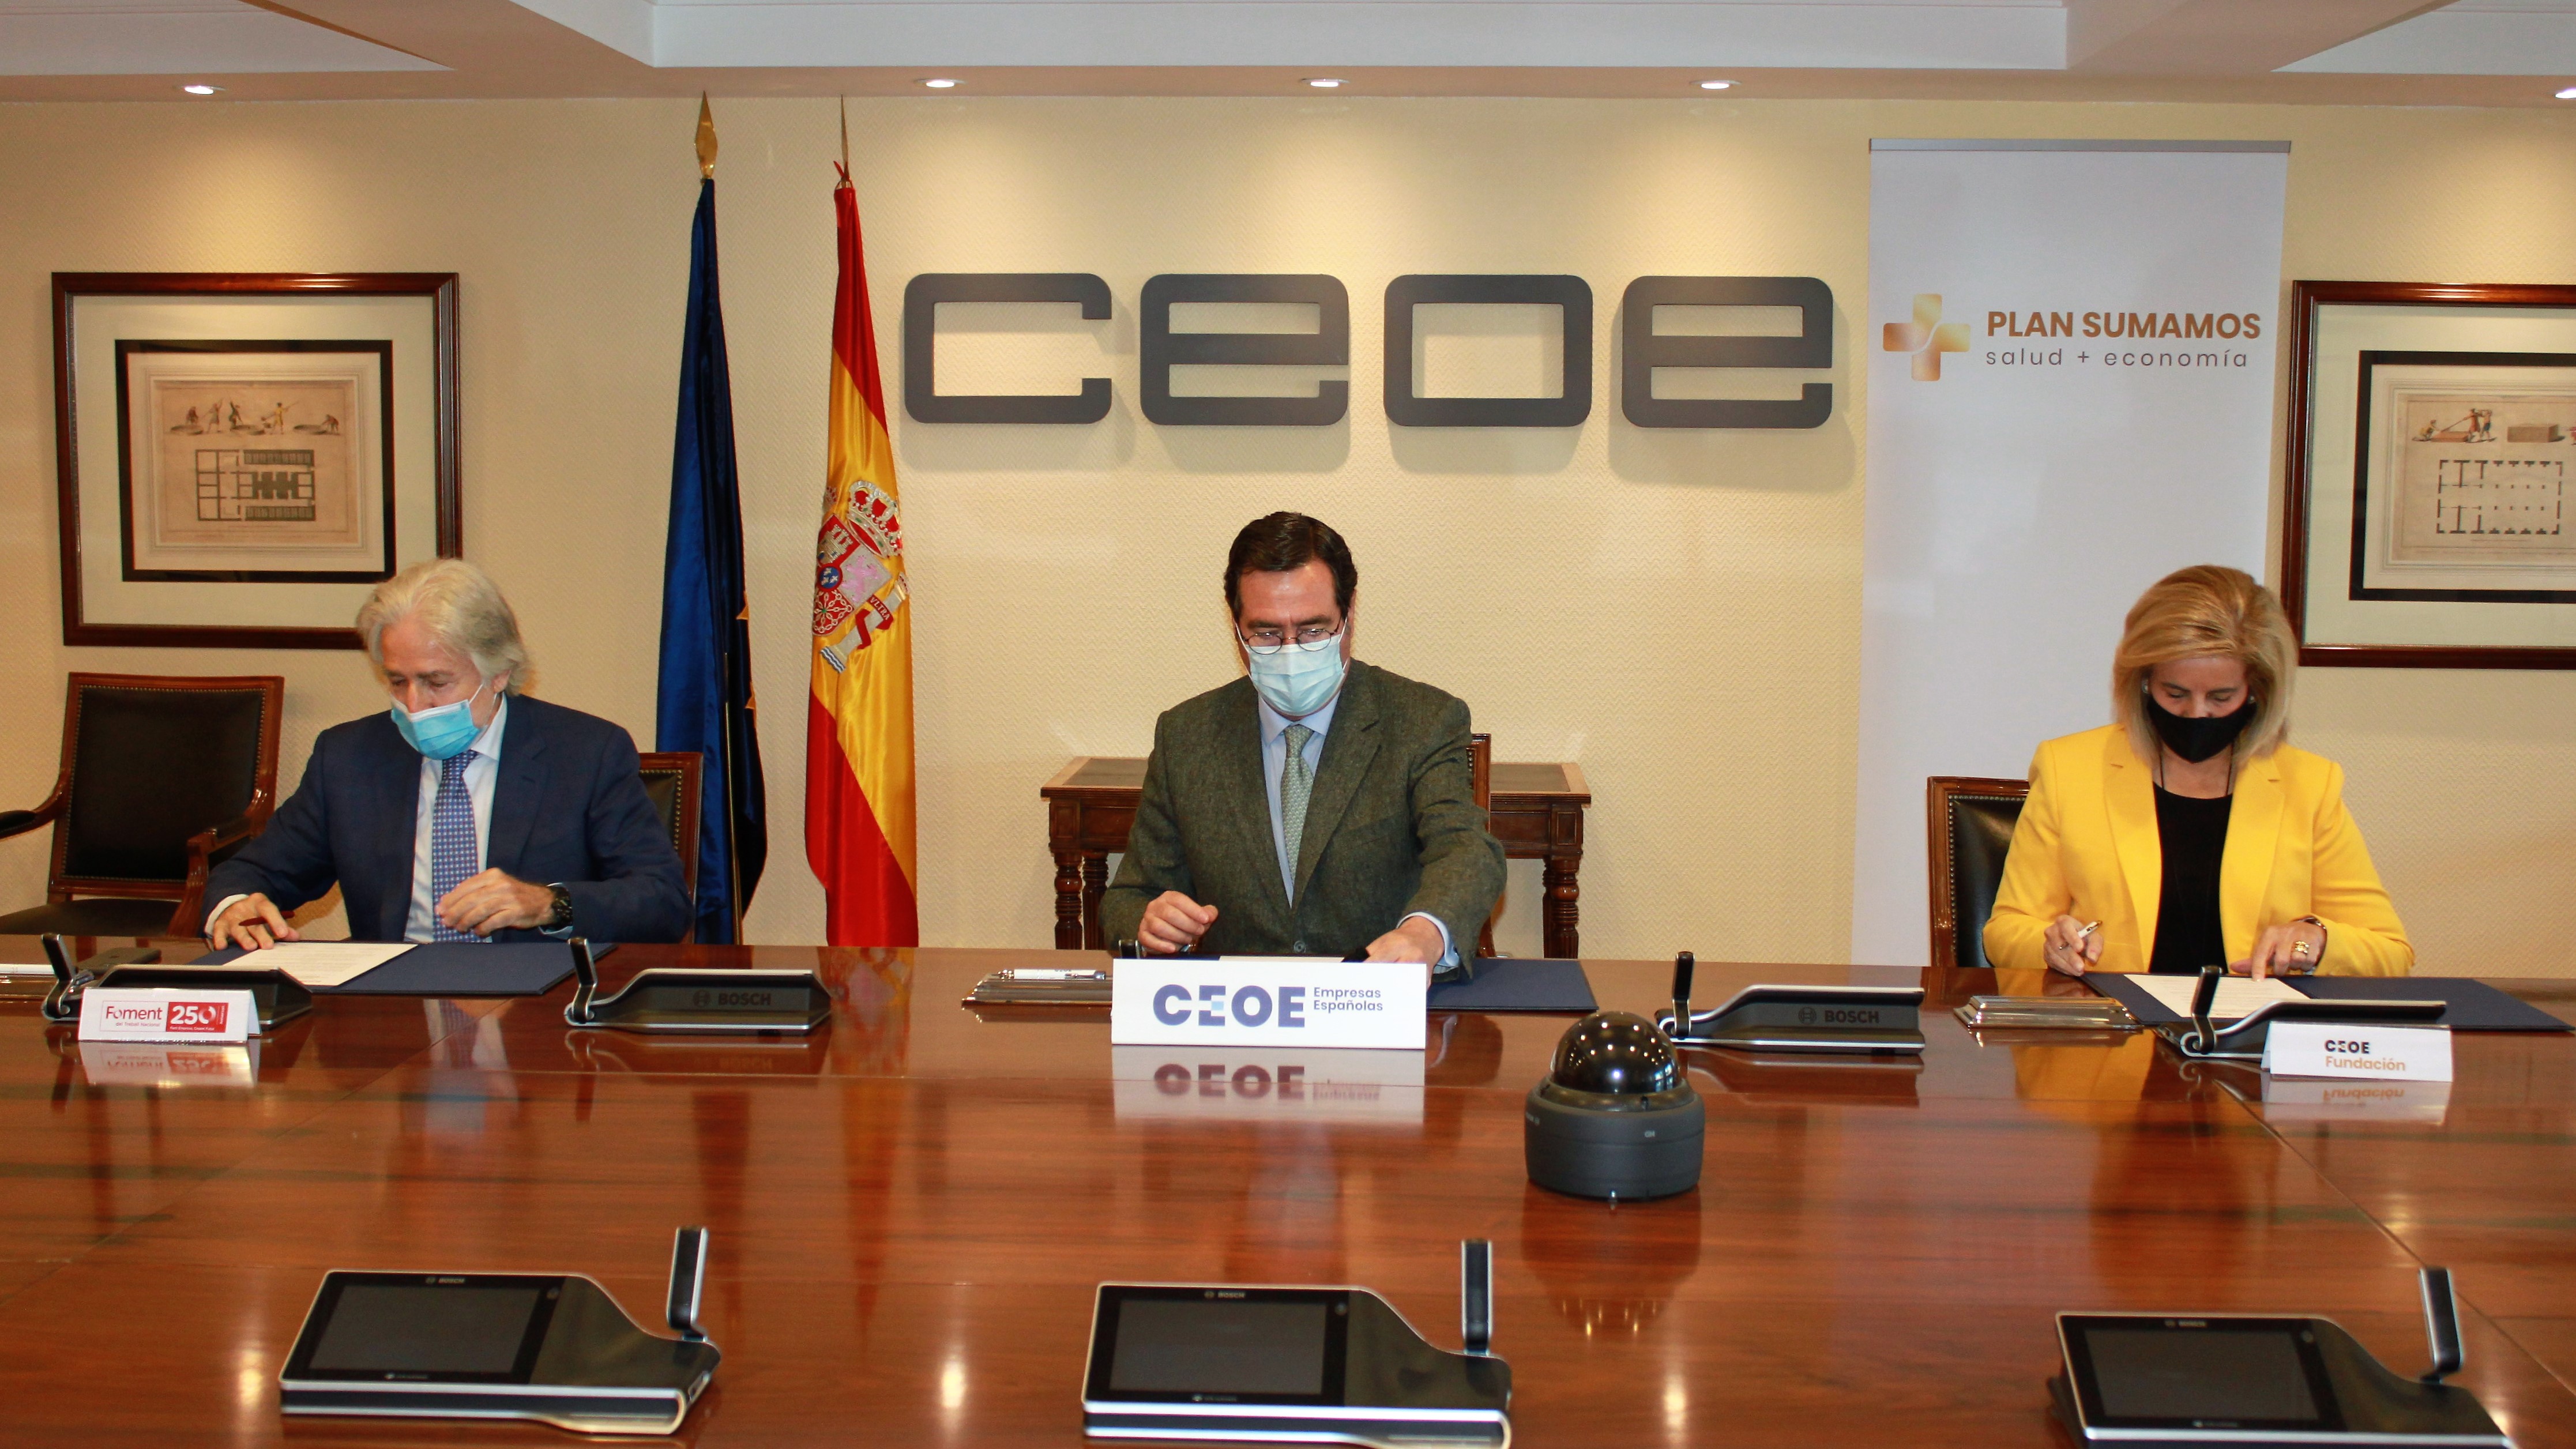 Fundación CEOE firma con Foment del Treball PLAN SUMAMOS II